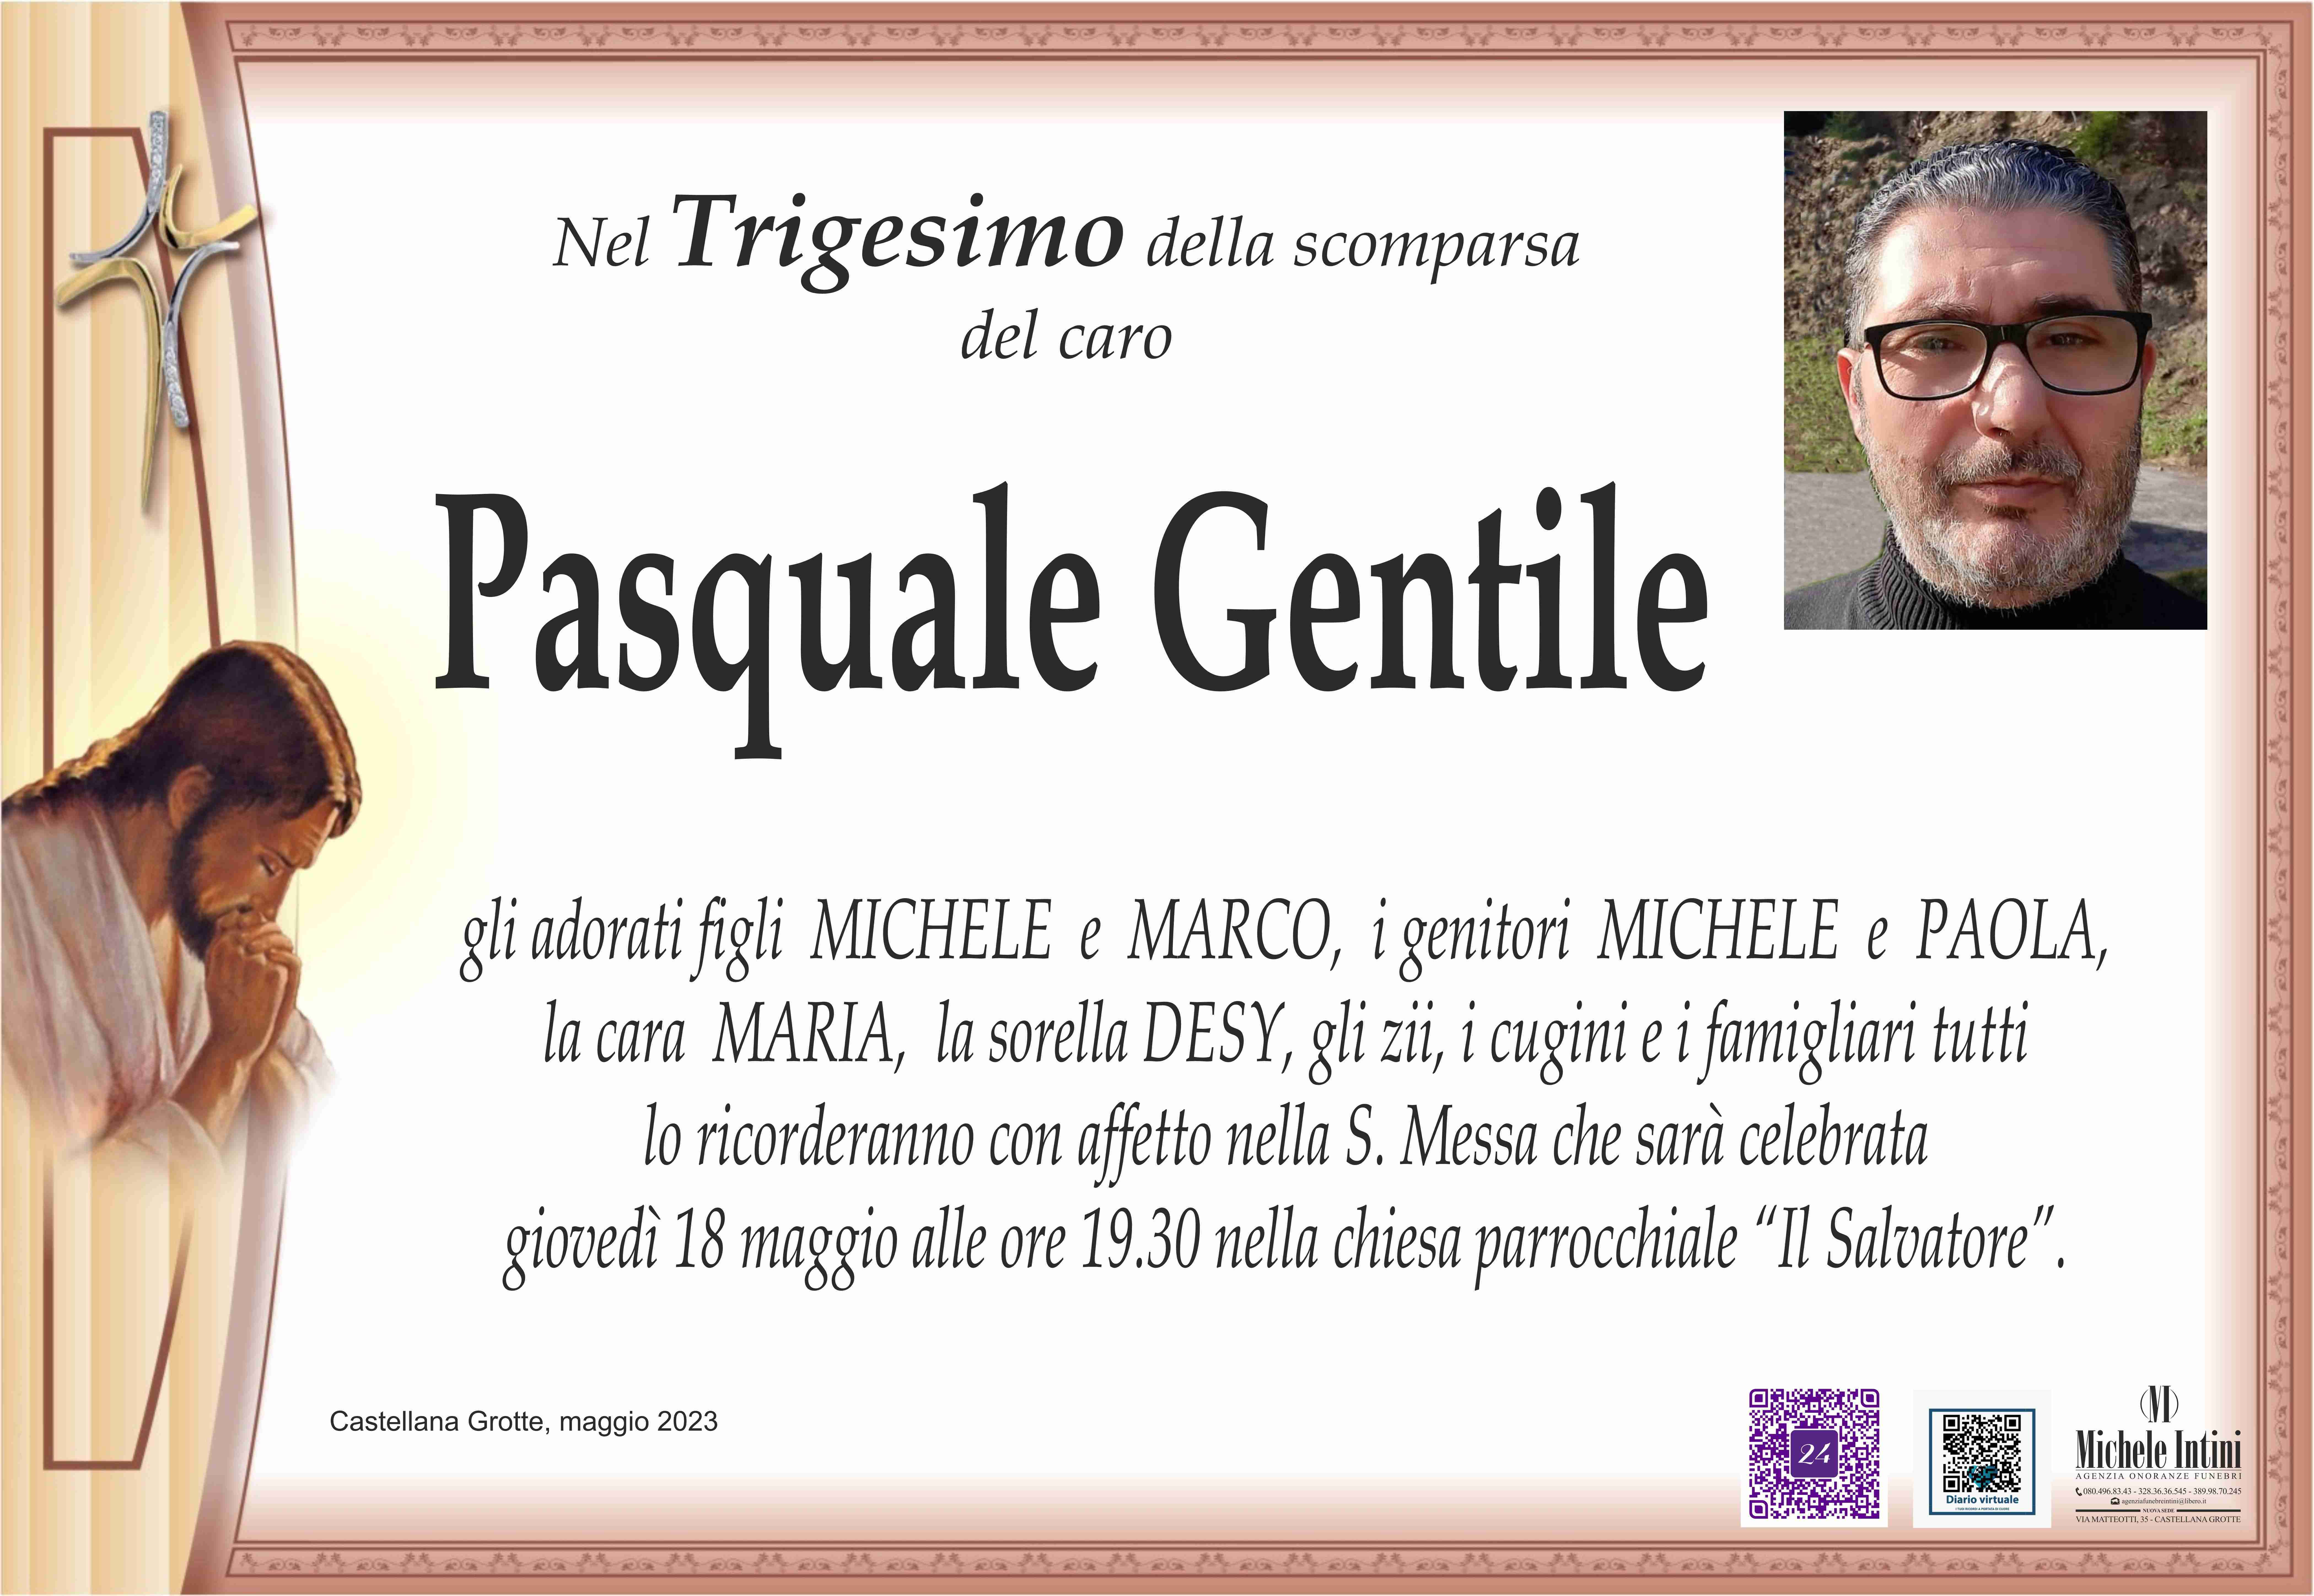 Pasquale Gentile